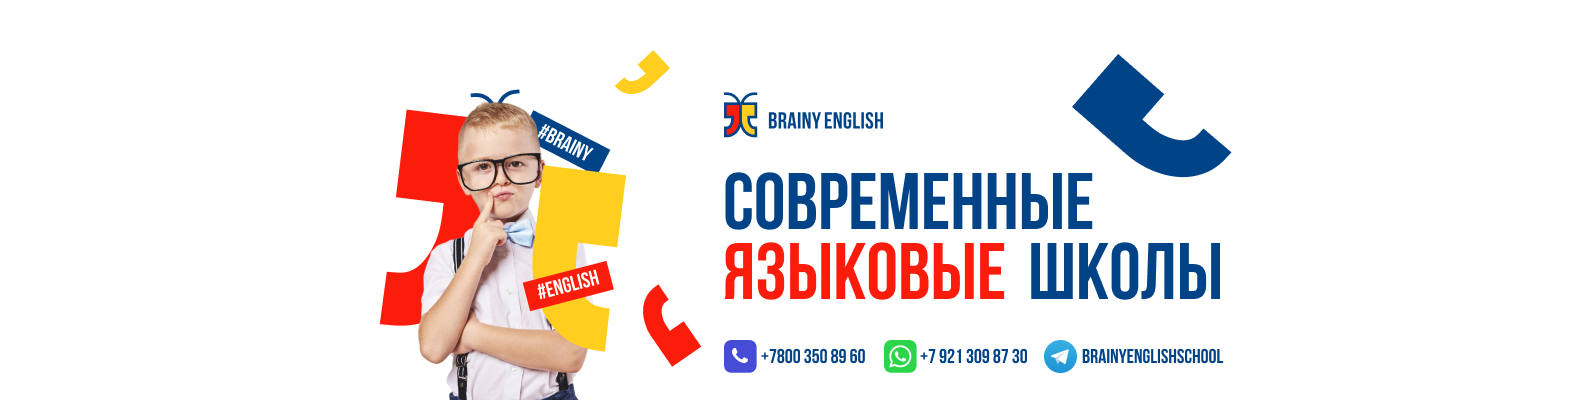 Brainy English - современные языковые школы